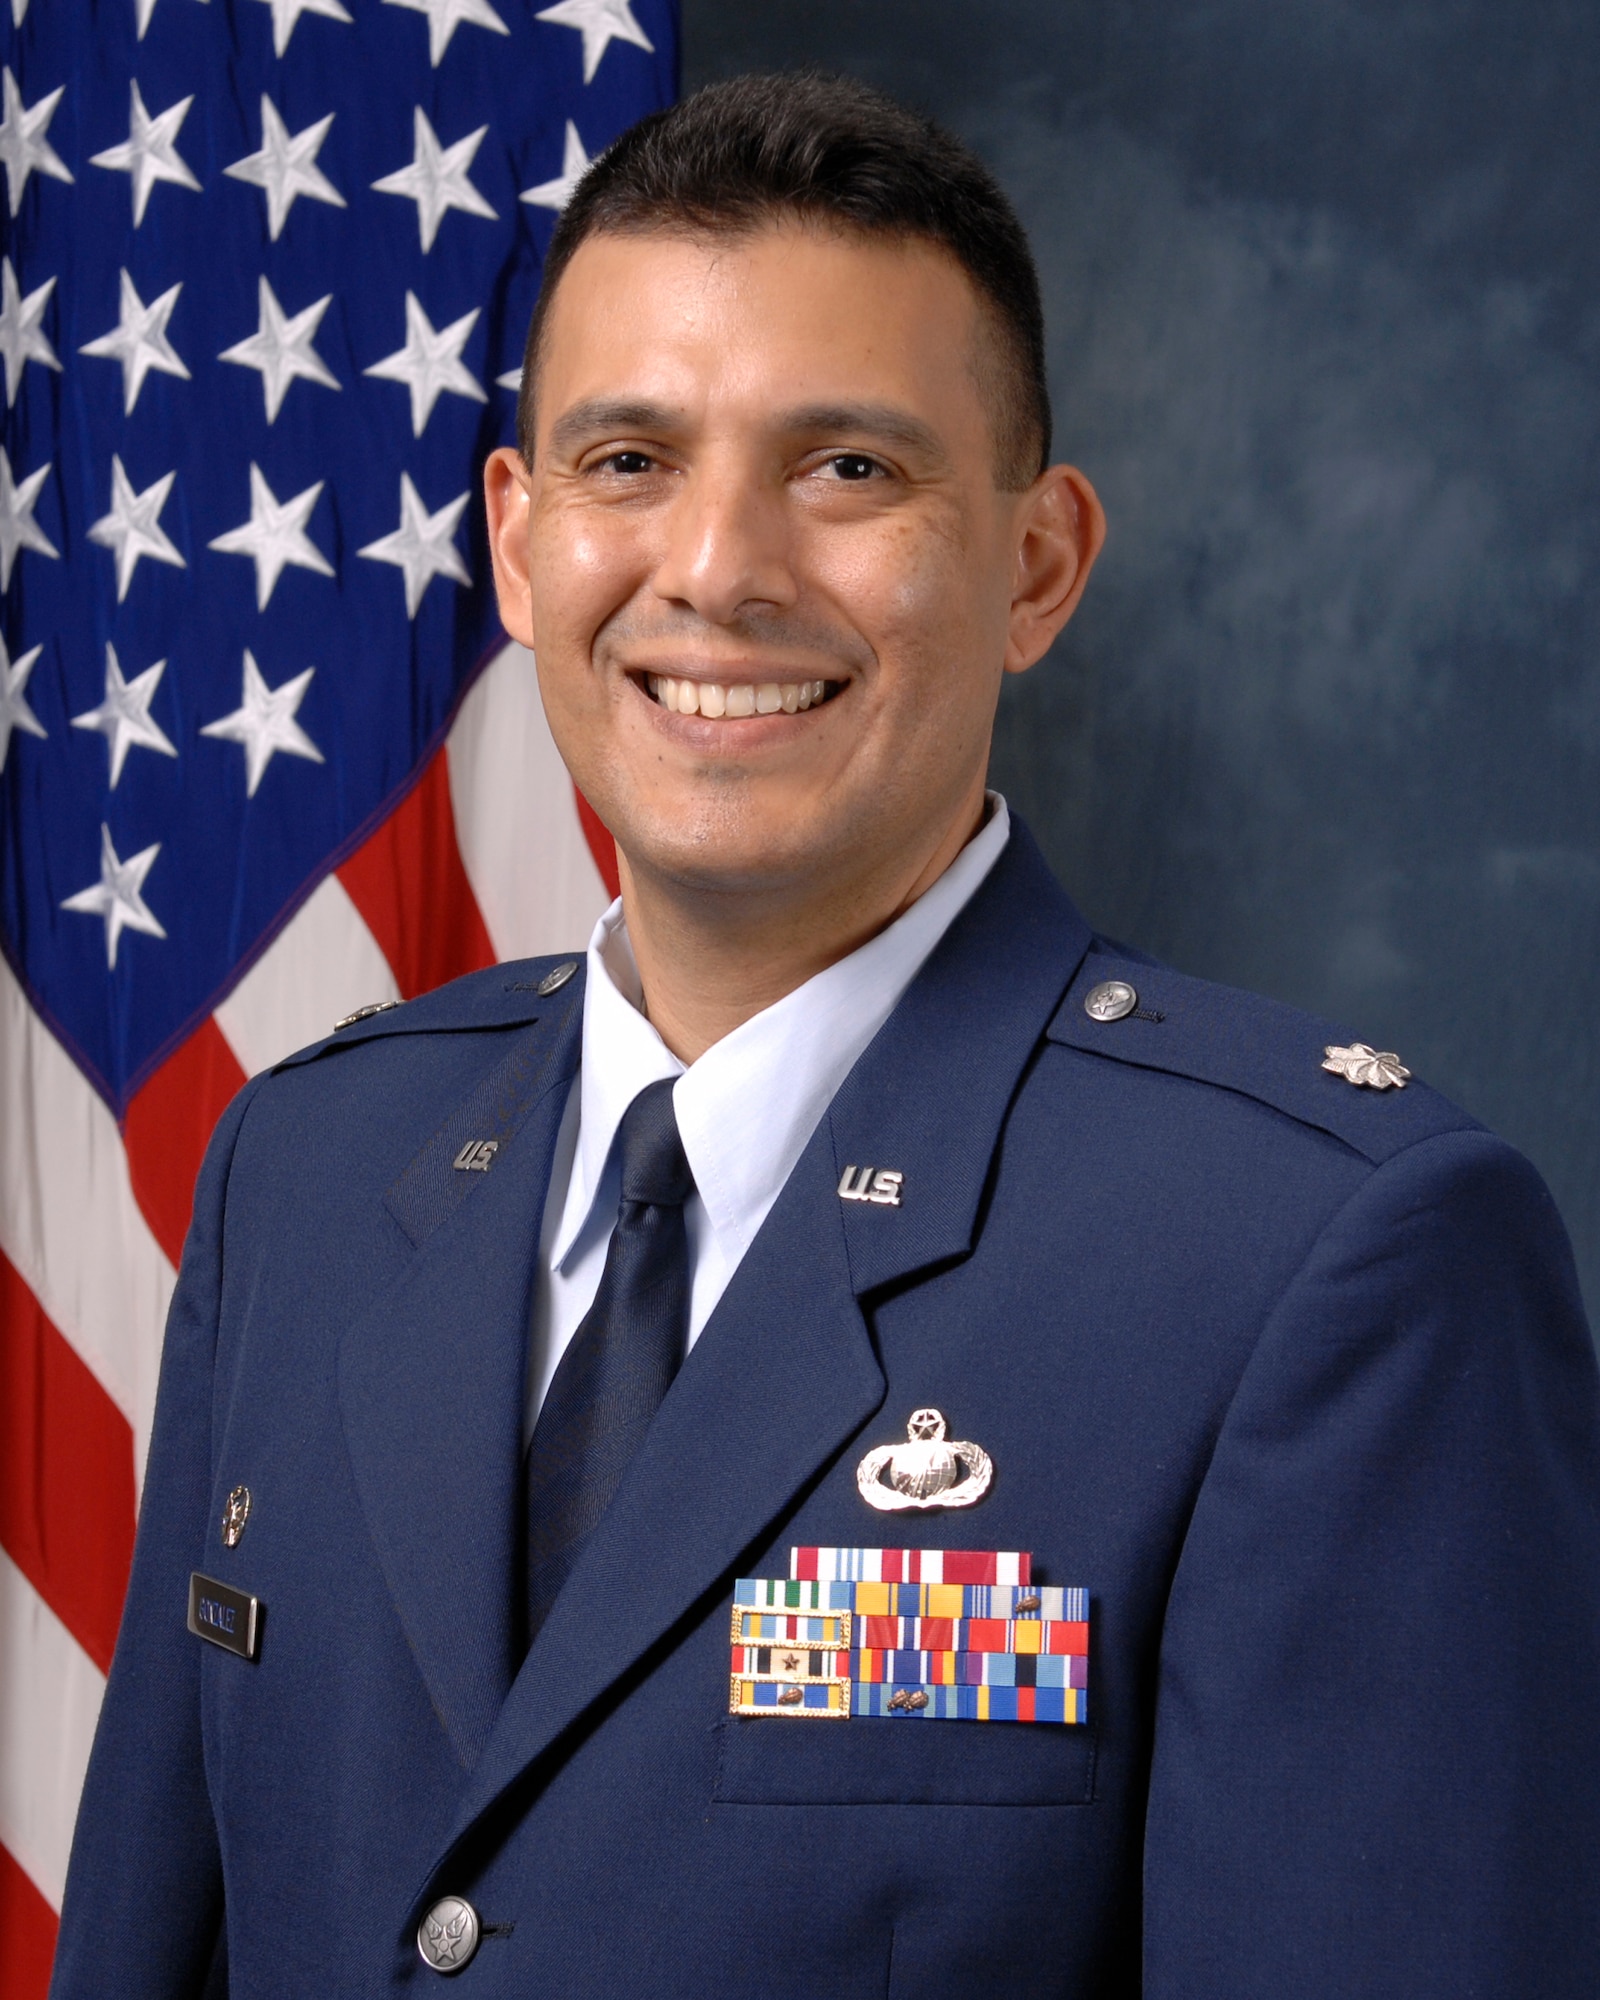 Lt. Col. Gonzalez